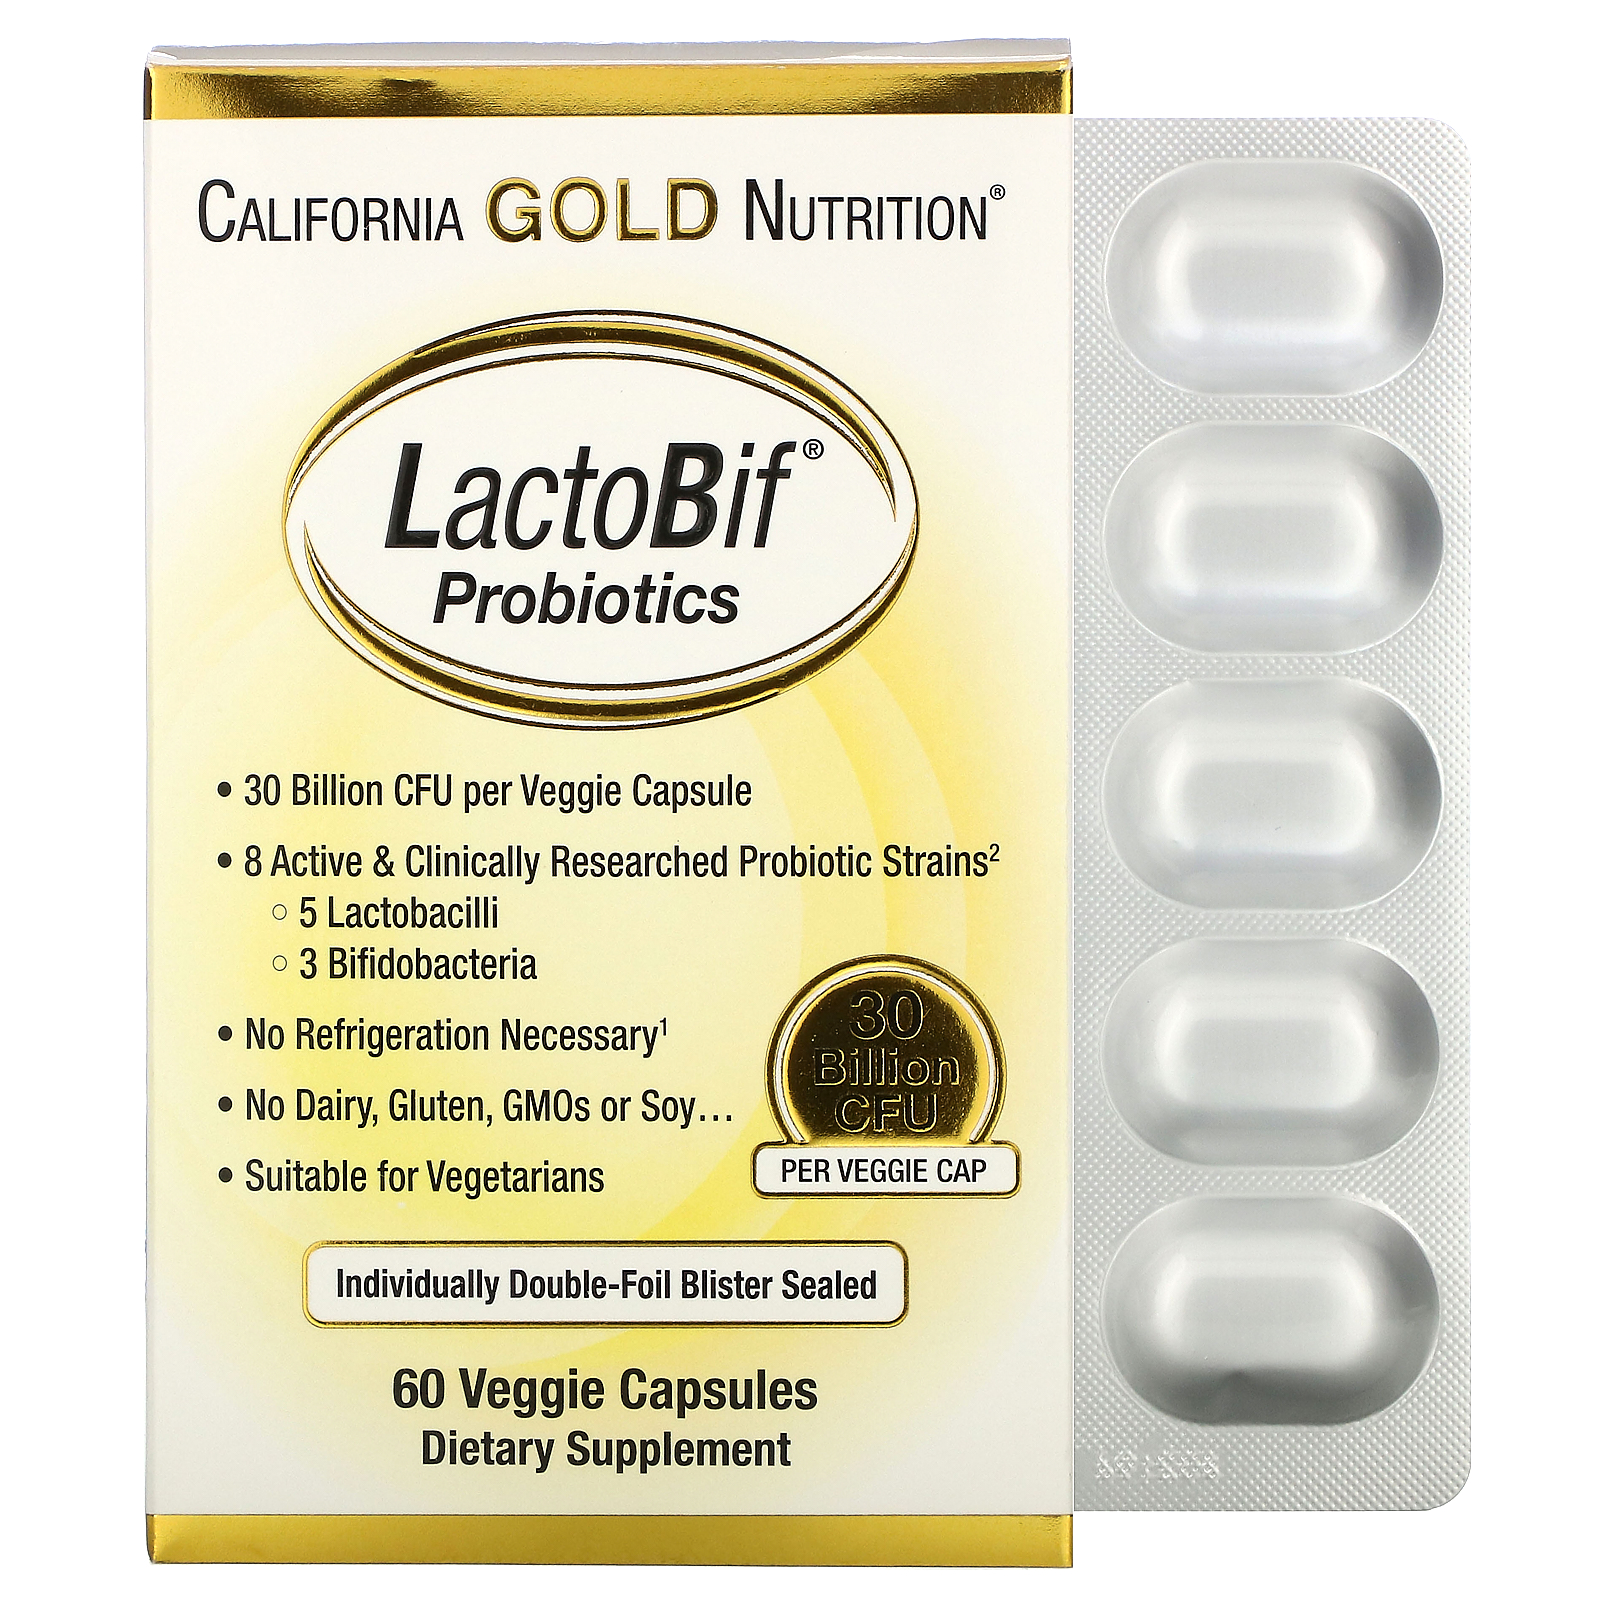 濕疹 營養素 California Gold Nutrition, LactoBif 益生菌，300 億菌落單位，60 粒素食膠囊